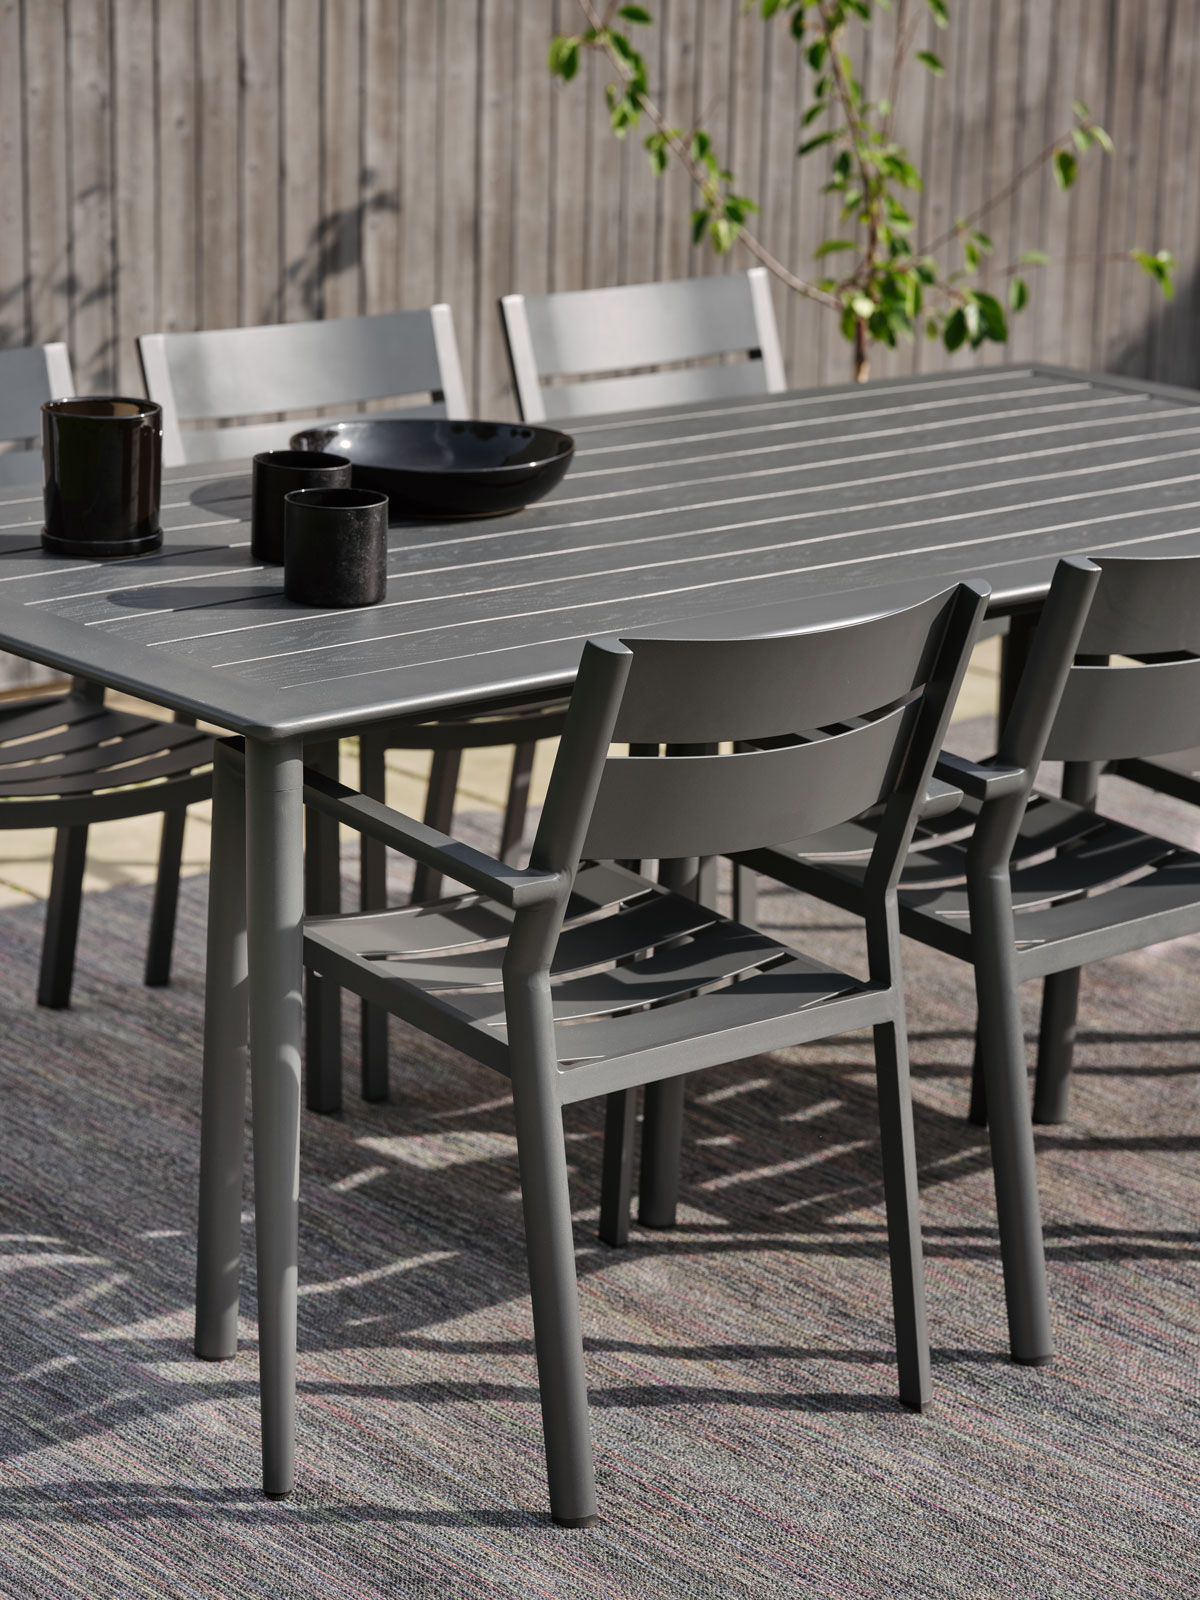 Nimes Matbord i färgen grå med stolar utomhus